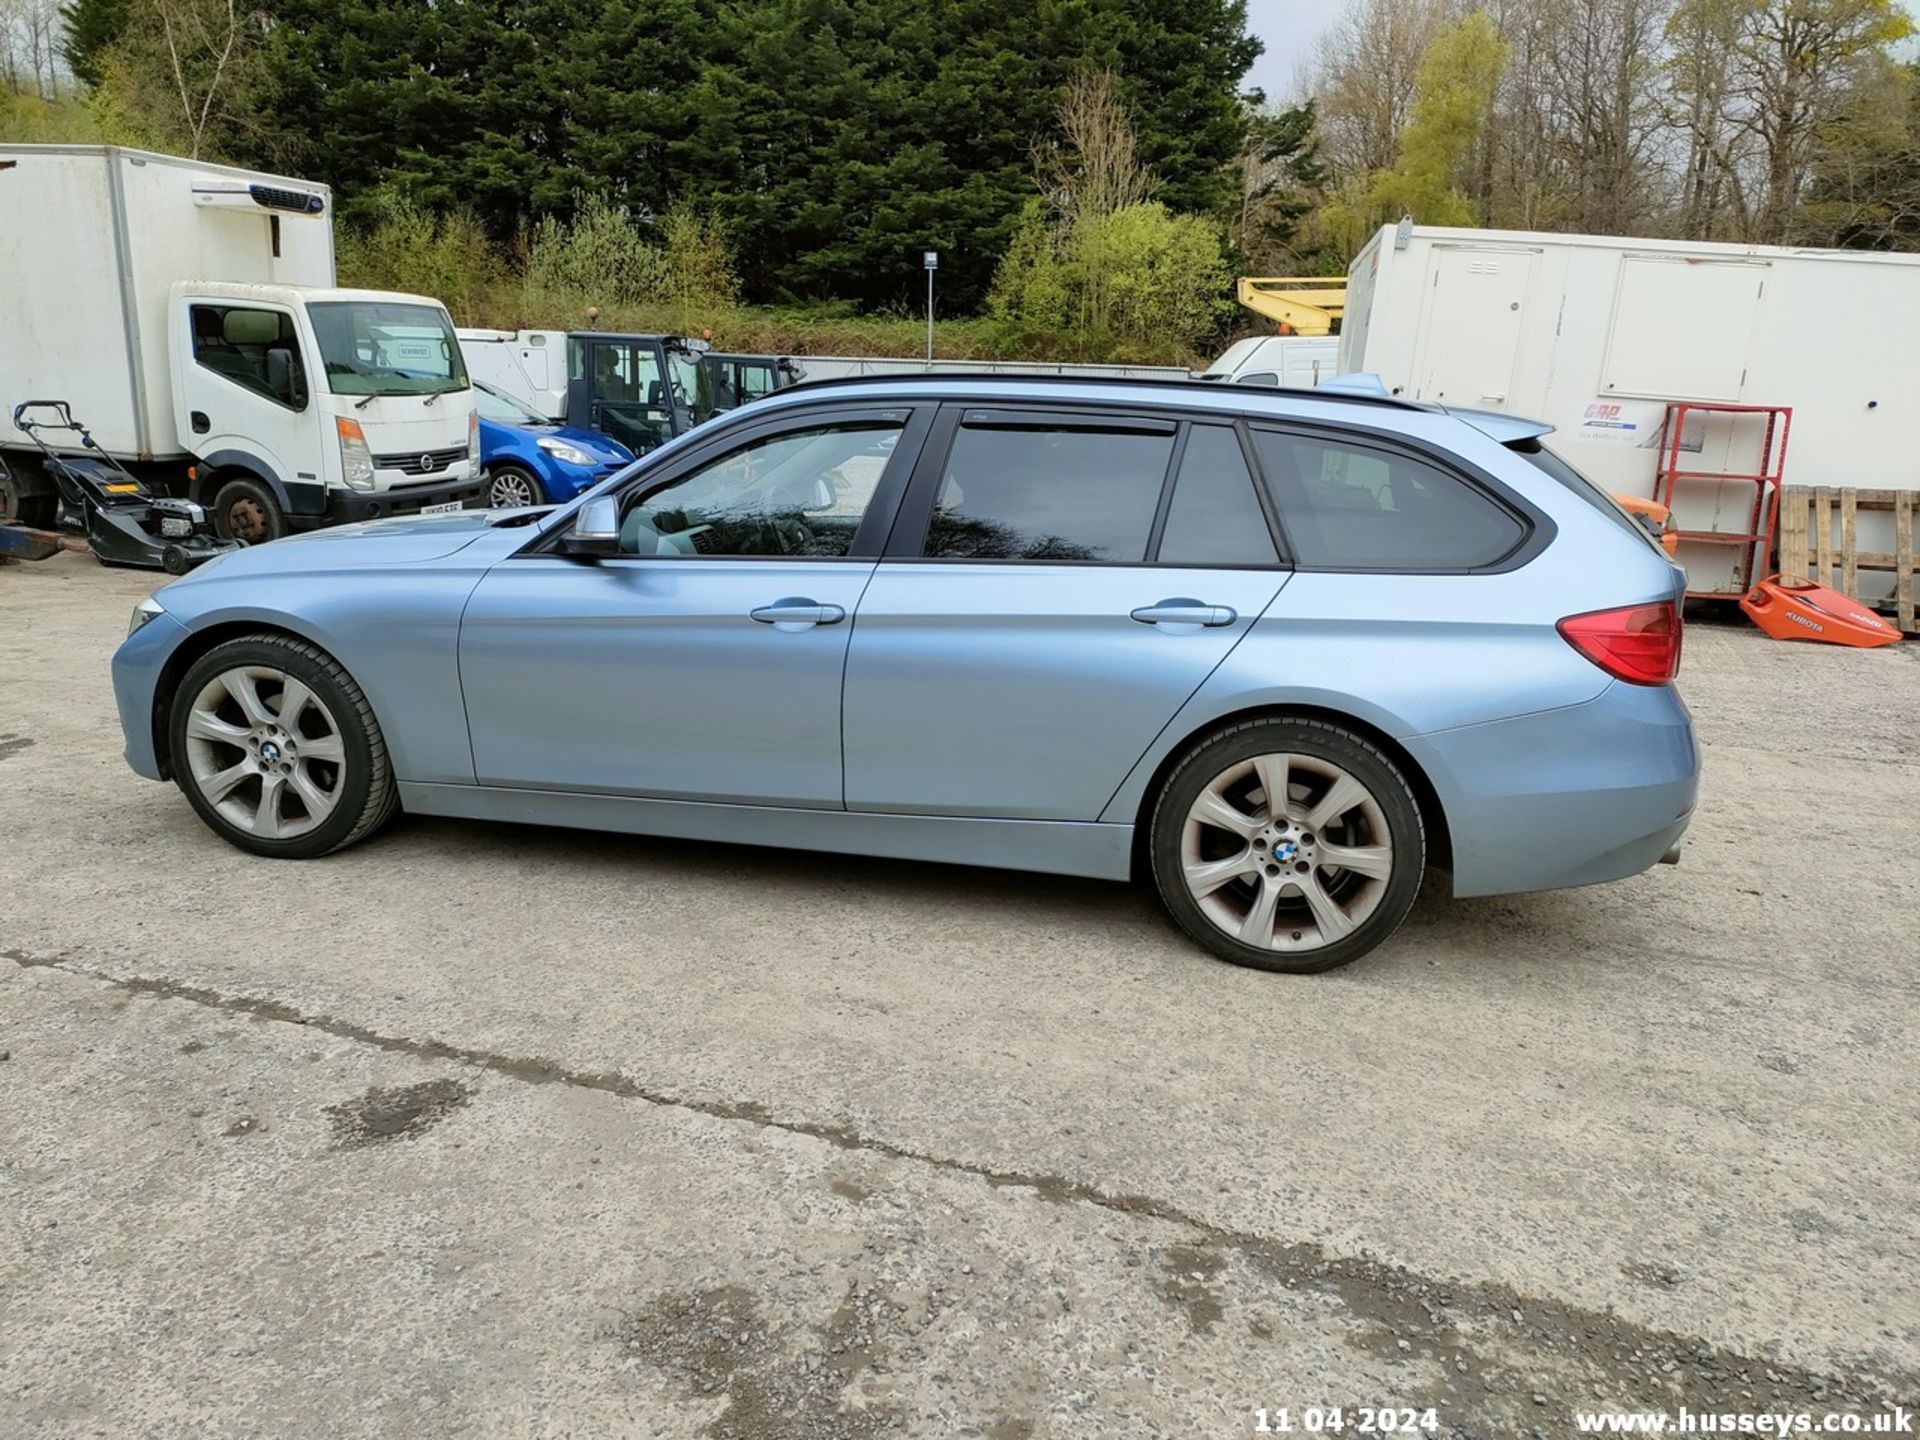 12/62 BMW 320D SE TOURING - 1995cc 5dr Estate (Blue, 174k) - Image 21 of 70